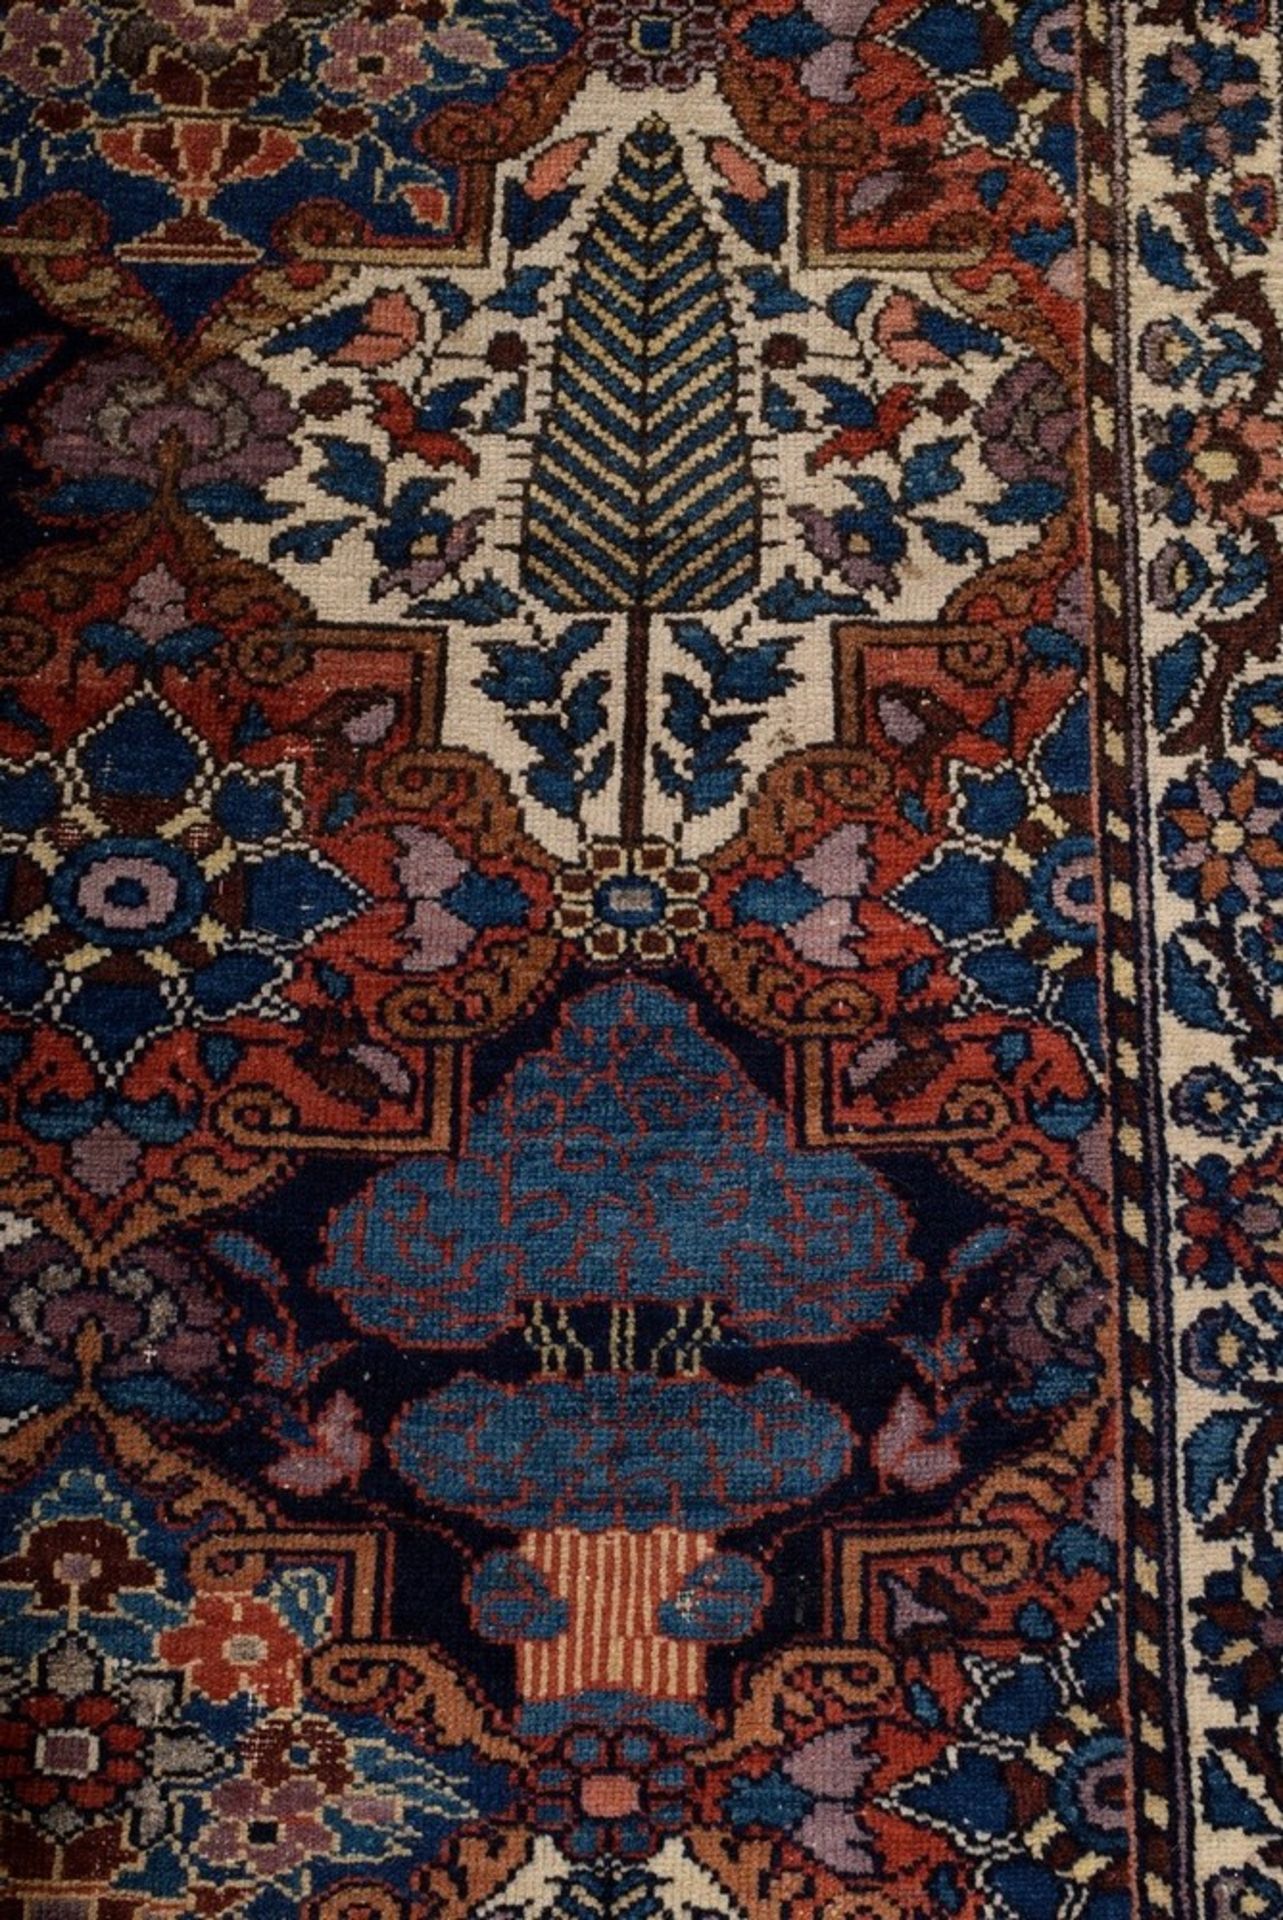 Großer Bachtiari Teppich mit floralem Rapportmuster aus Feldern in unterschiedlichen Grundfarben, d - Bild 4 aus 7